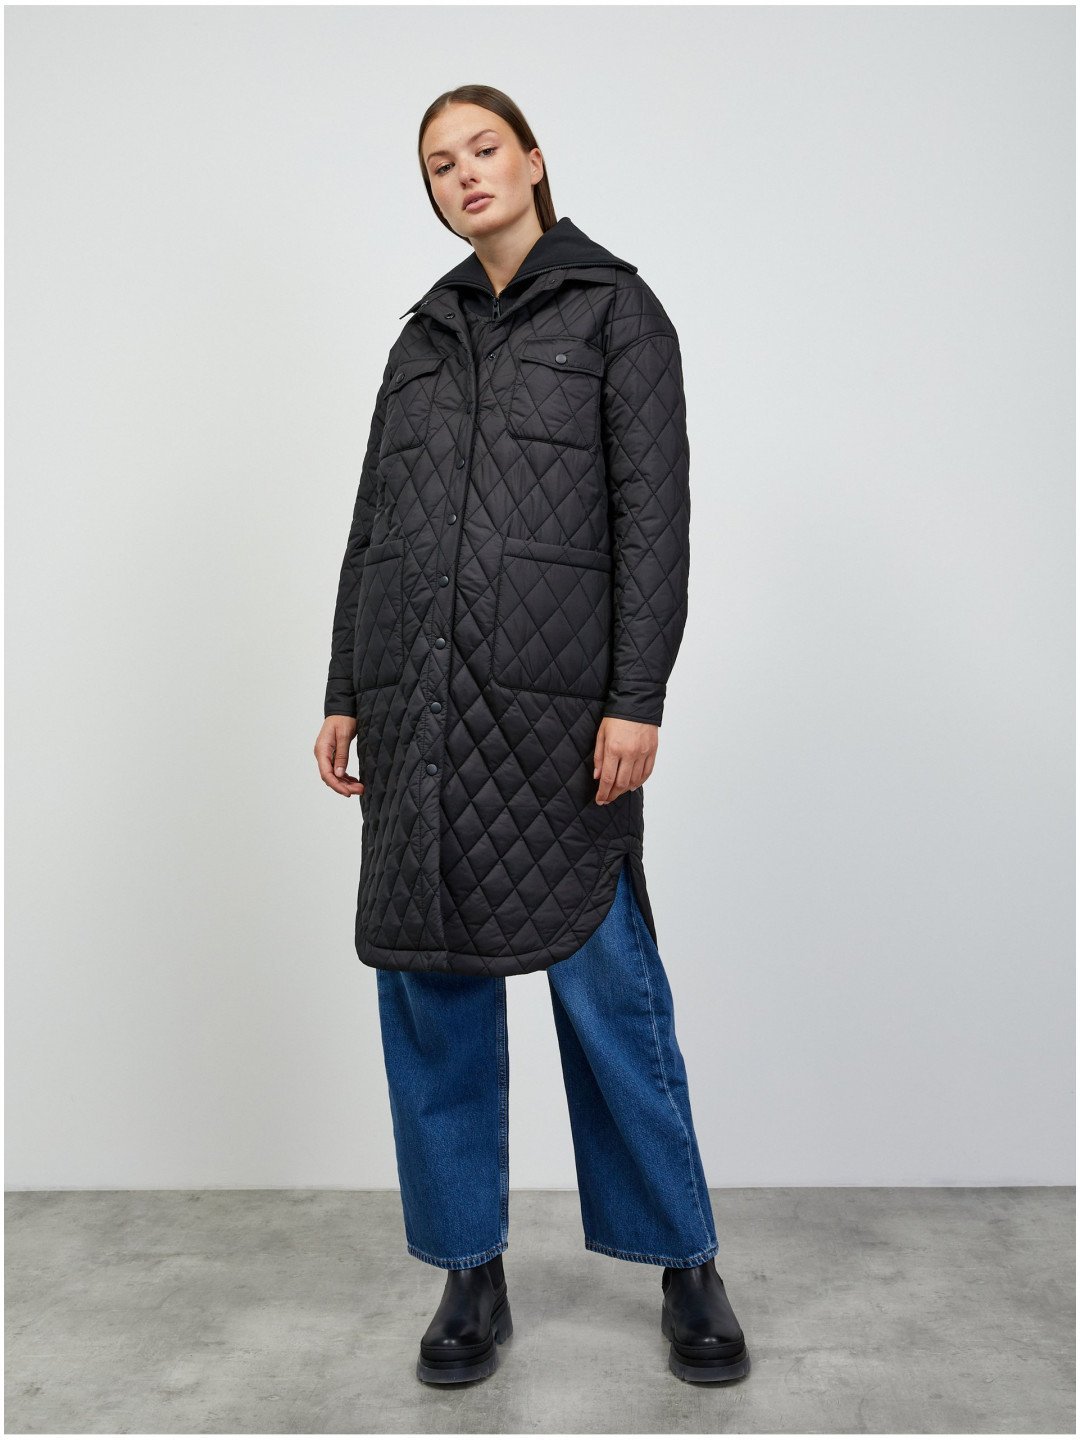 Černý dámský prošívaný lehký kabát s límcem ZOOT lab Sienna